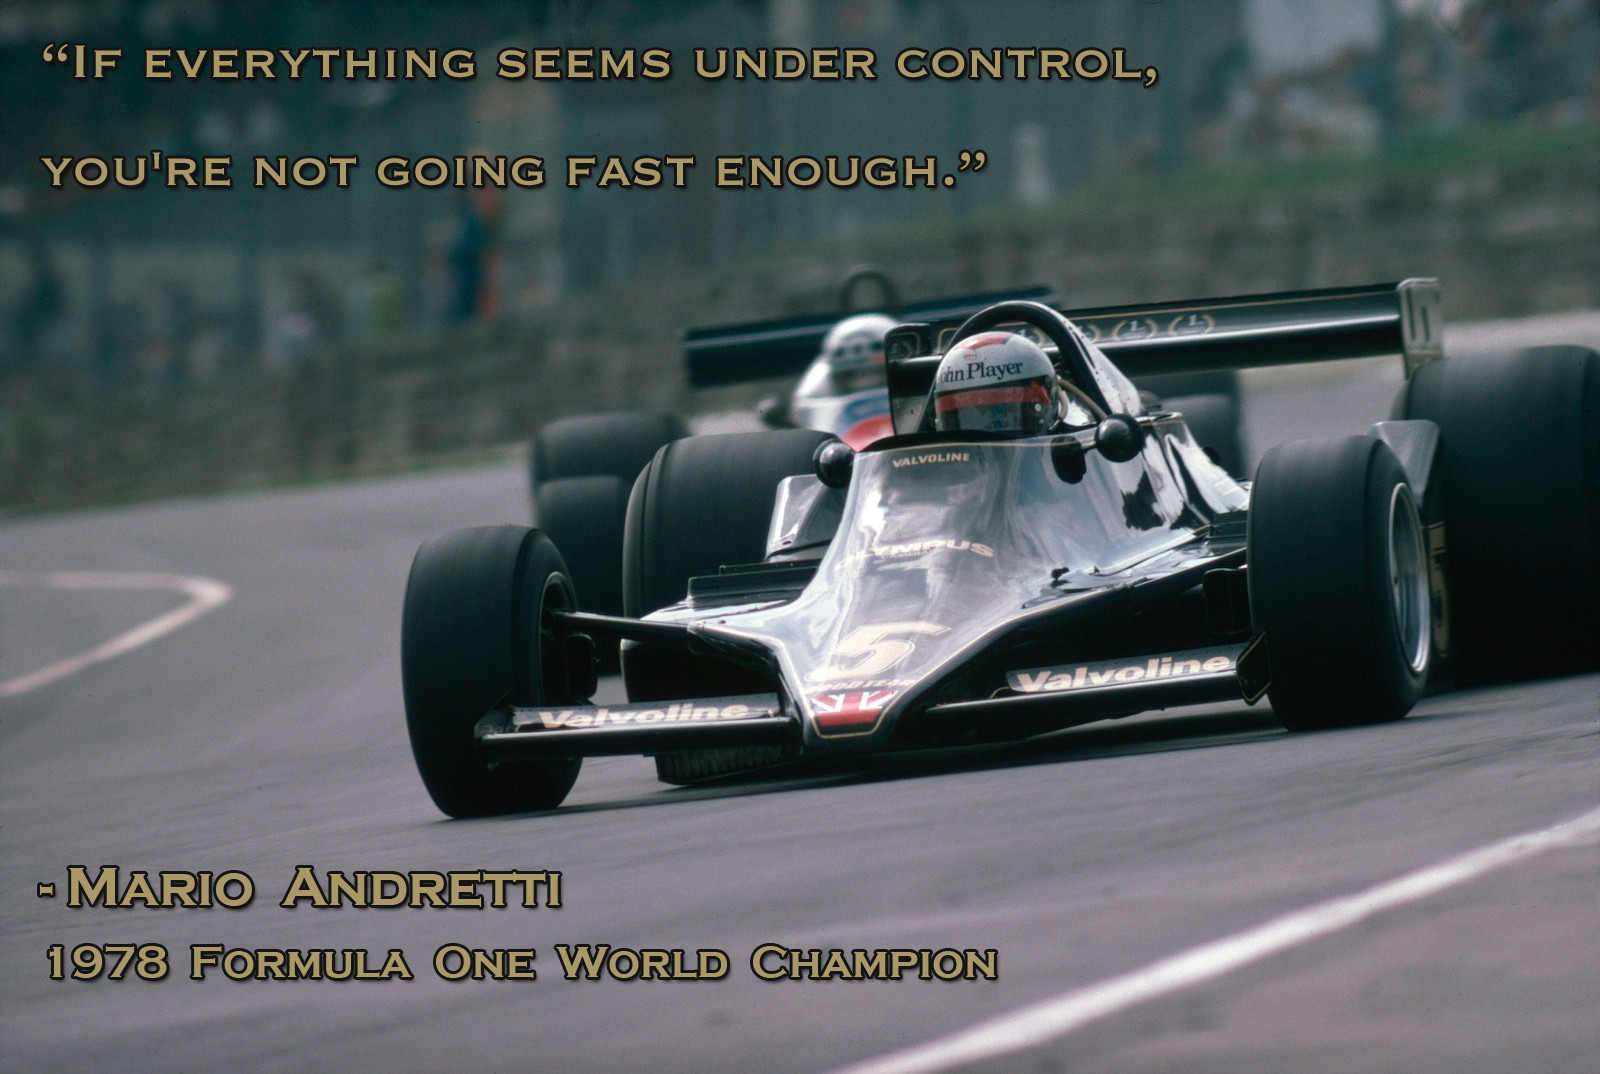 Mario Andretti's quote